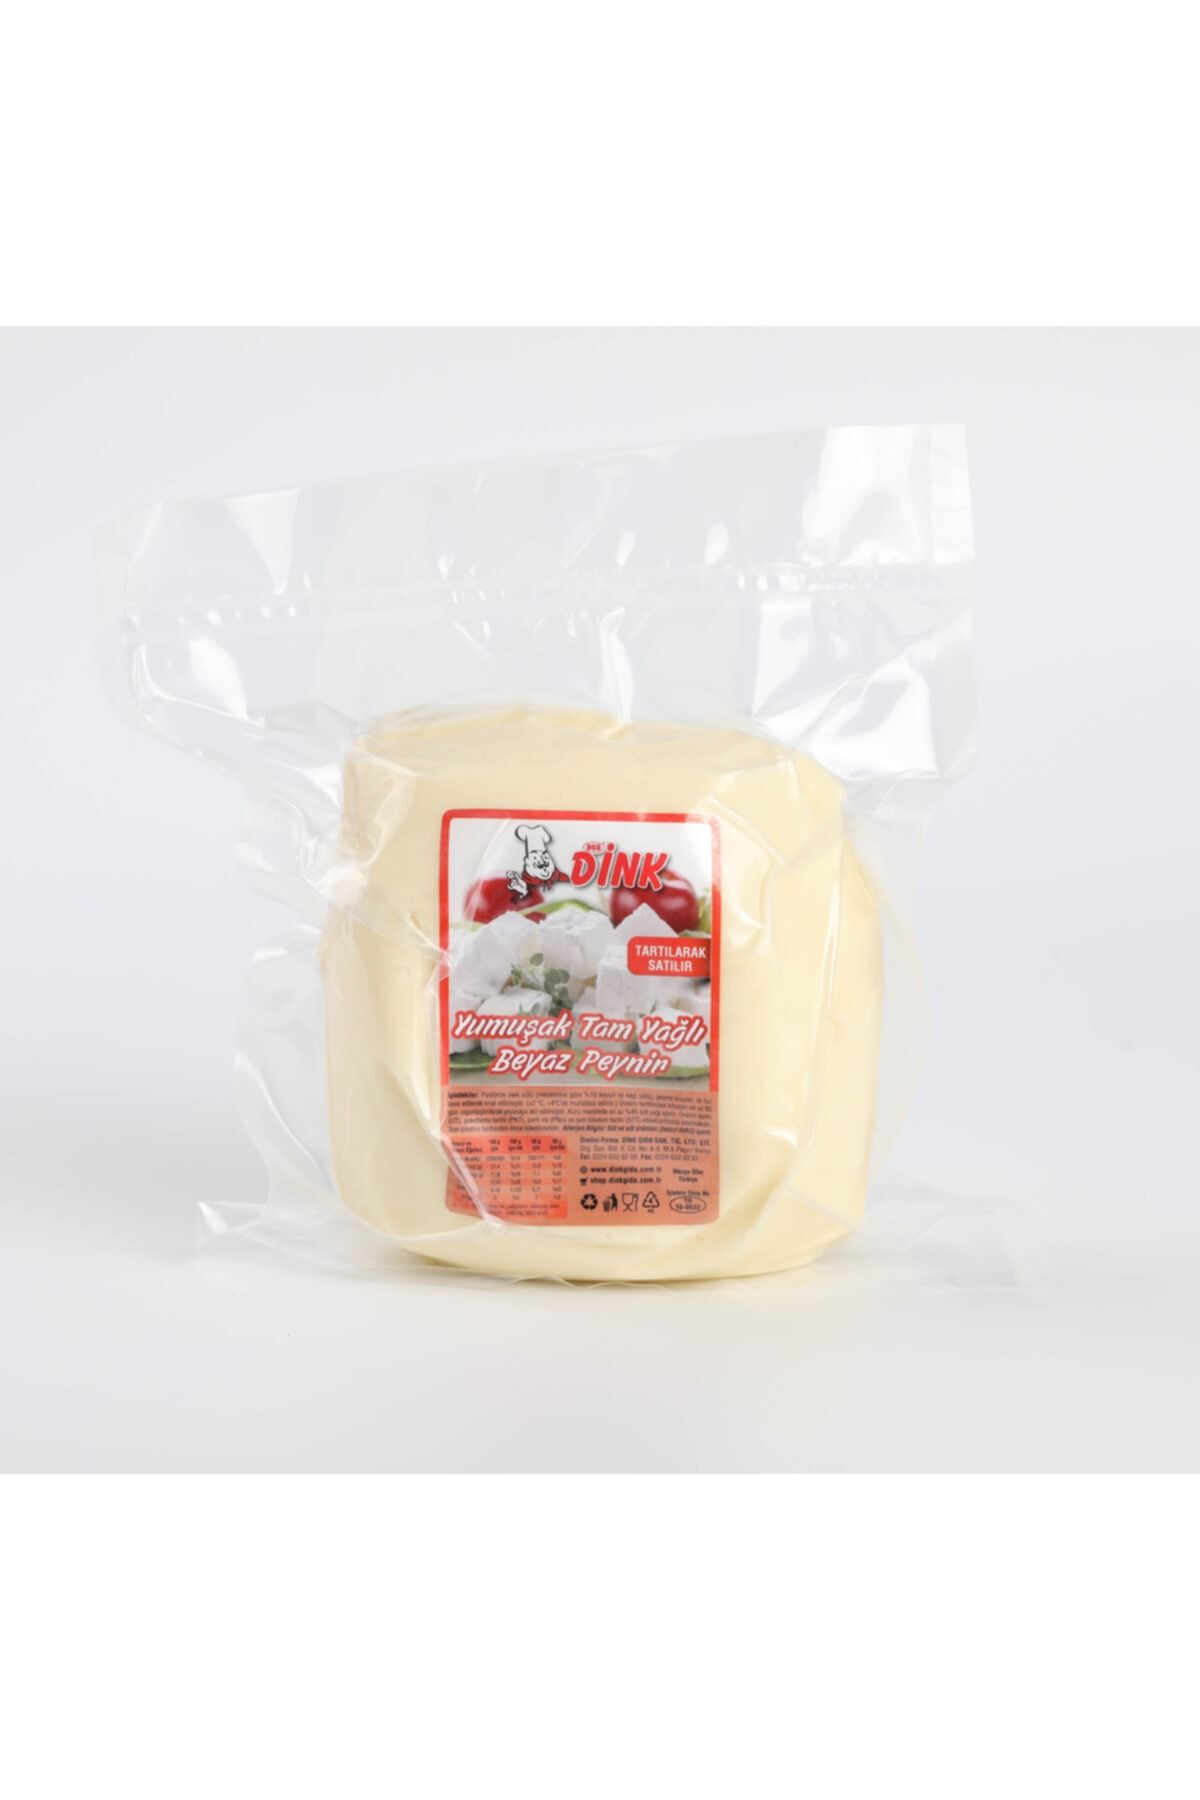 DİNK GIDA Tam Yağlı Klasik Olgunlaştırılmış Yumuşak Beyaz Peynir 500g. - Şirden Mayalı